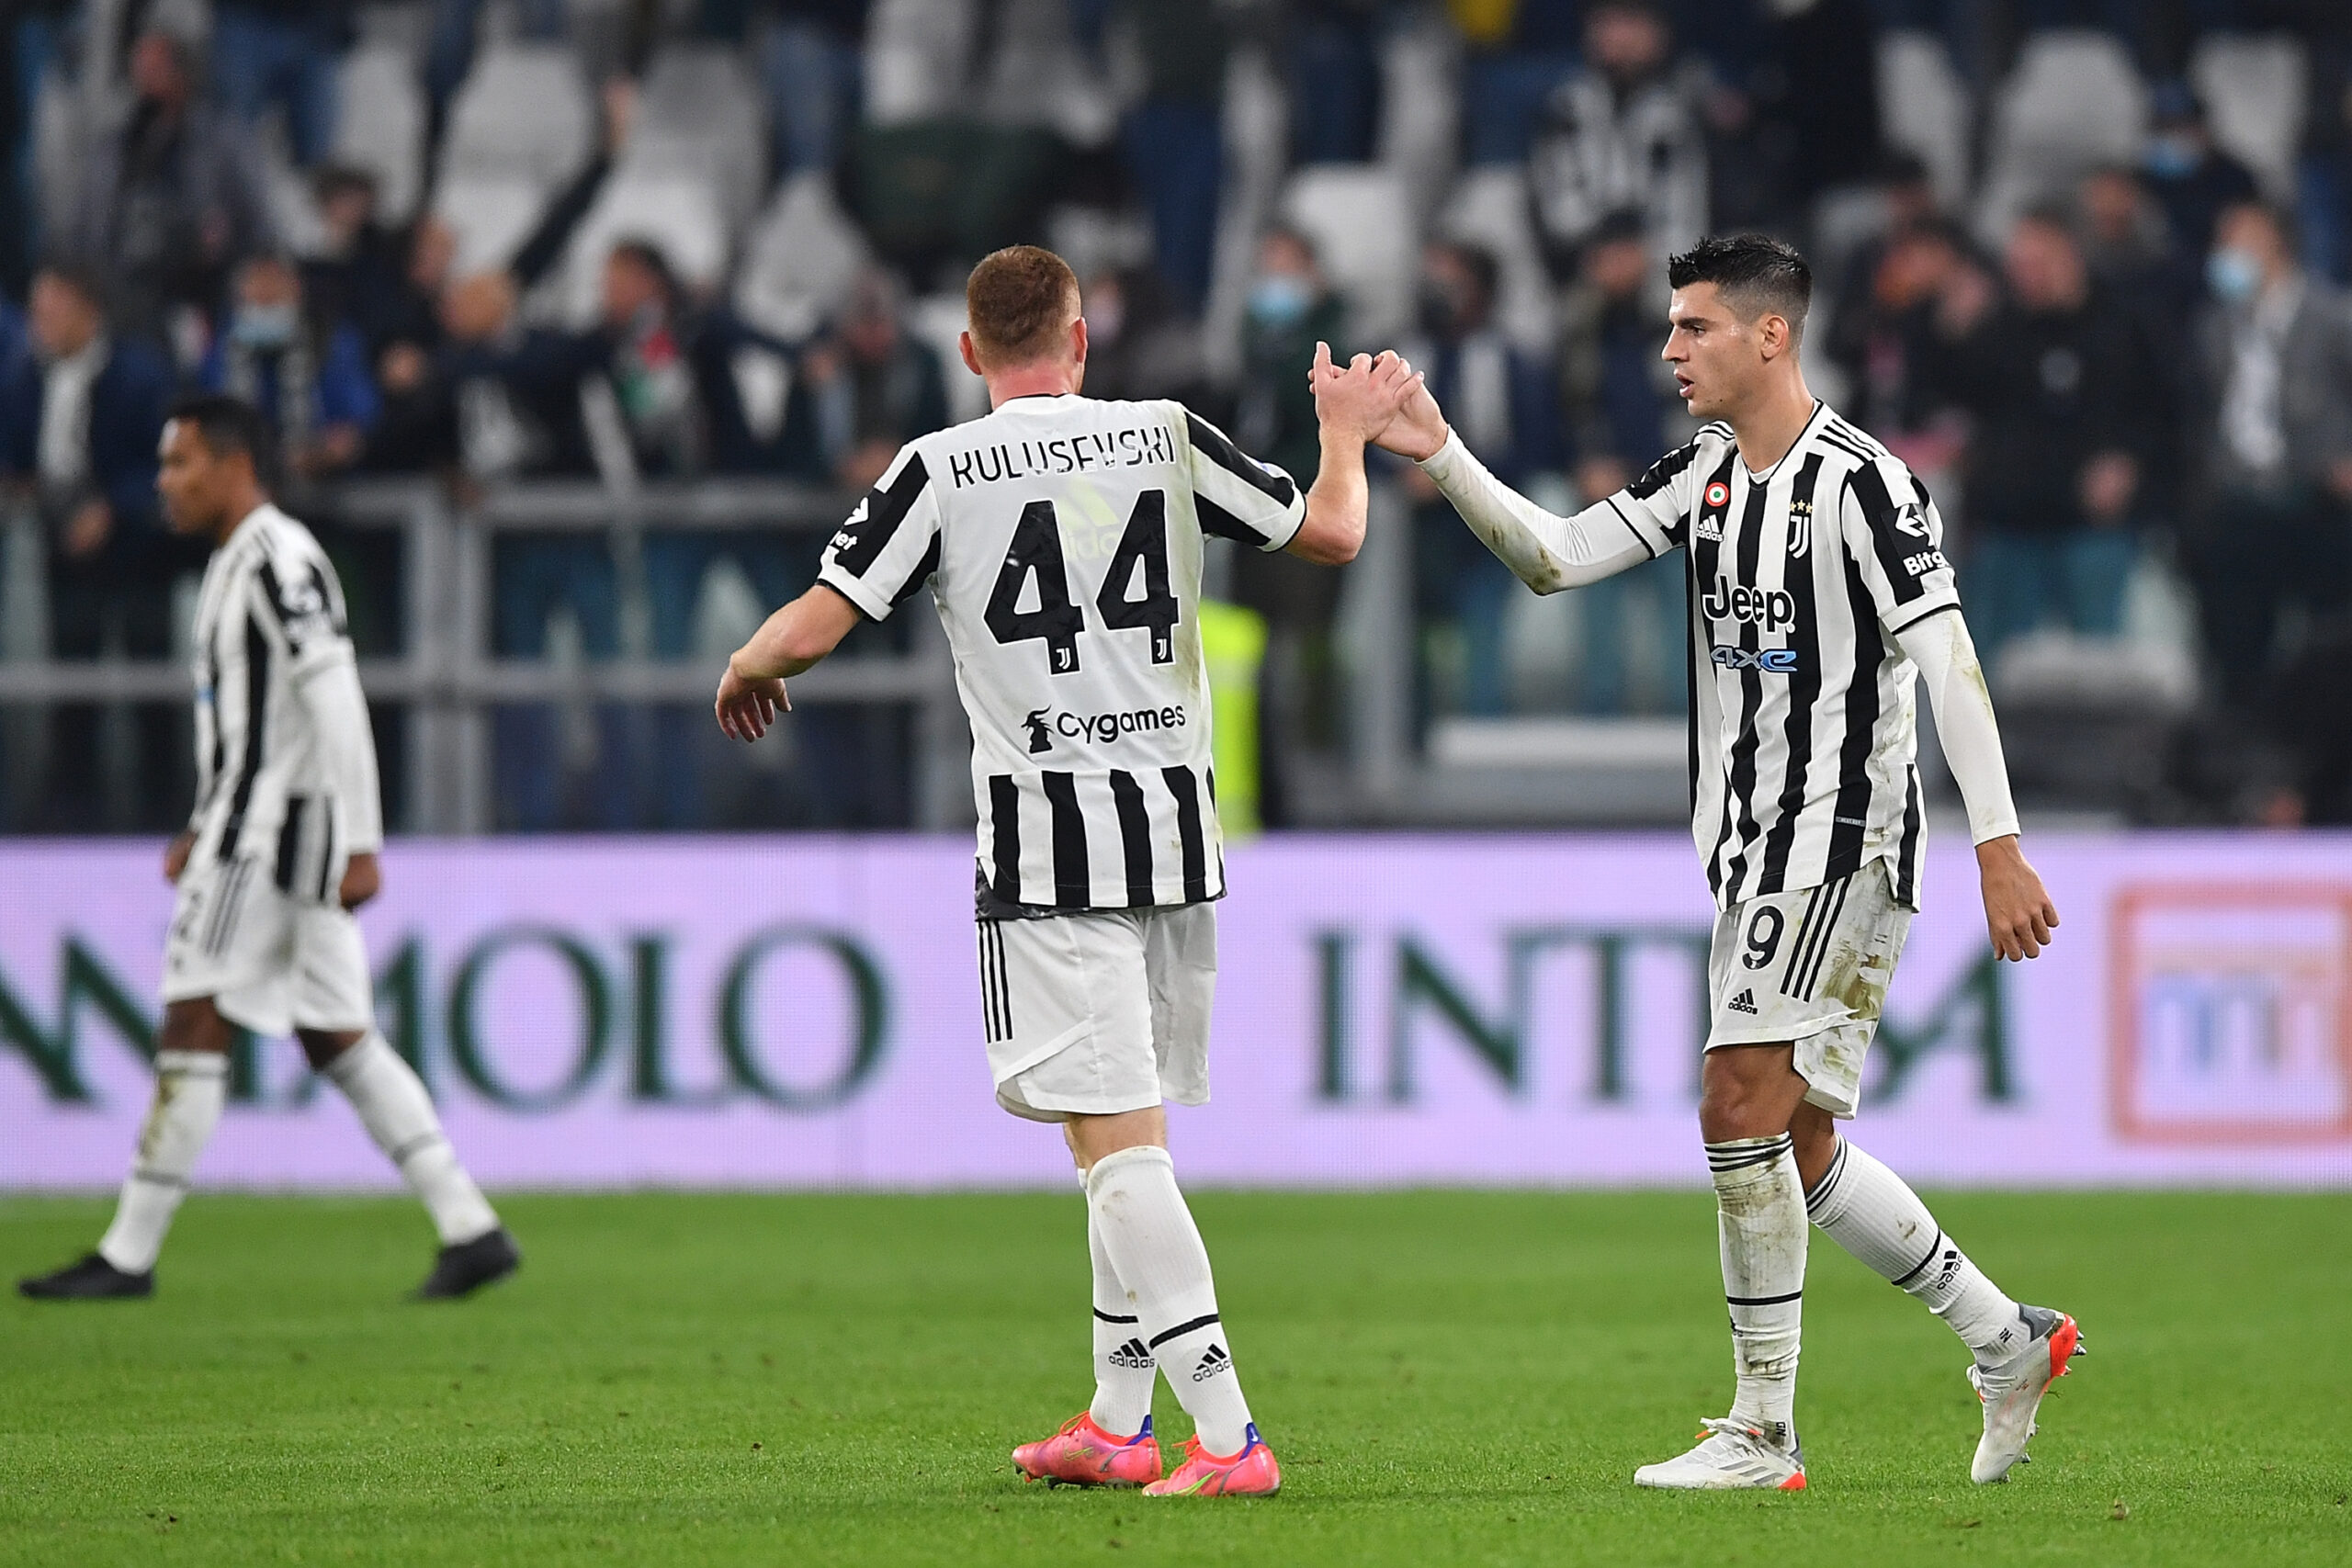 Juventus, statistica europea eguagliata